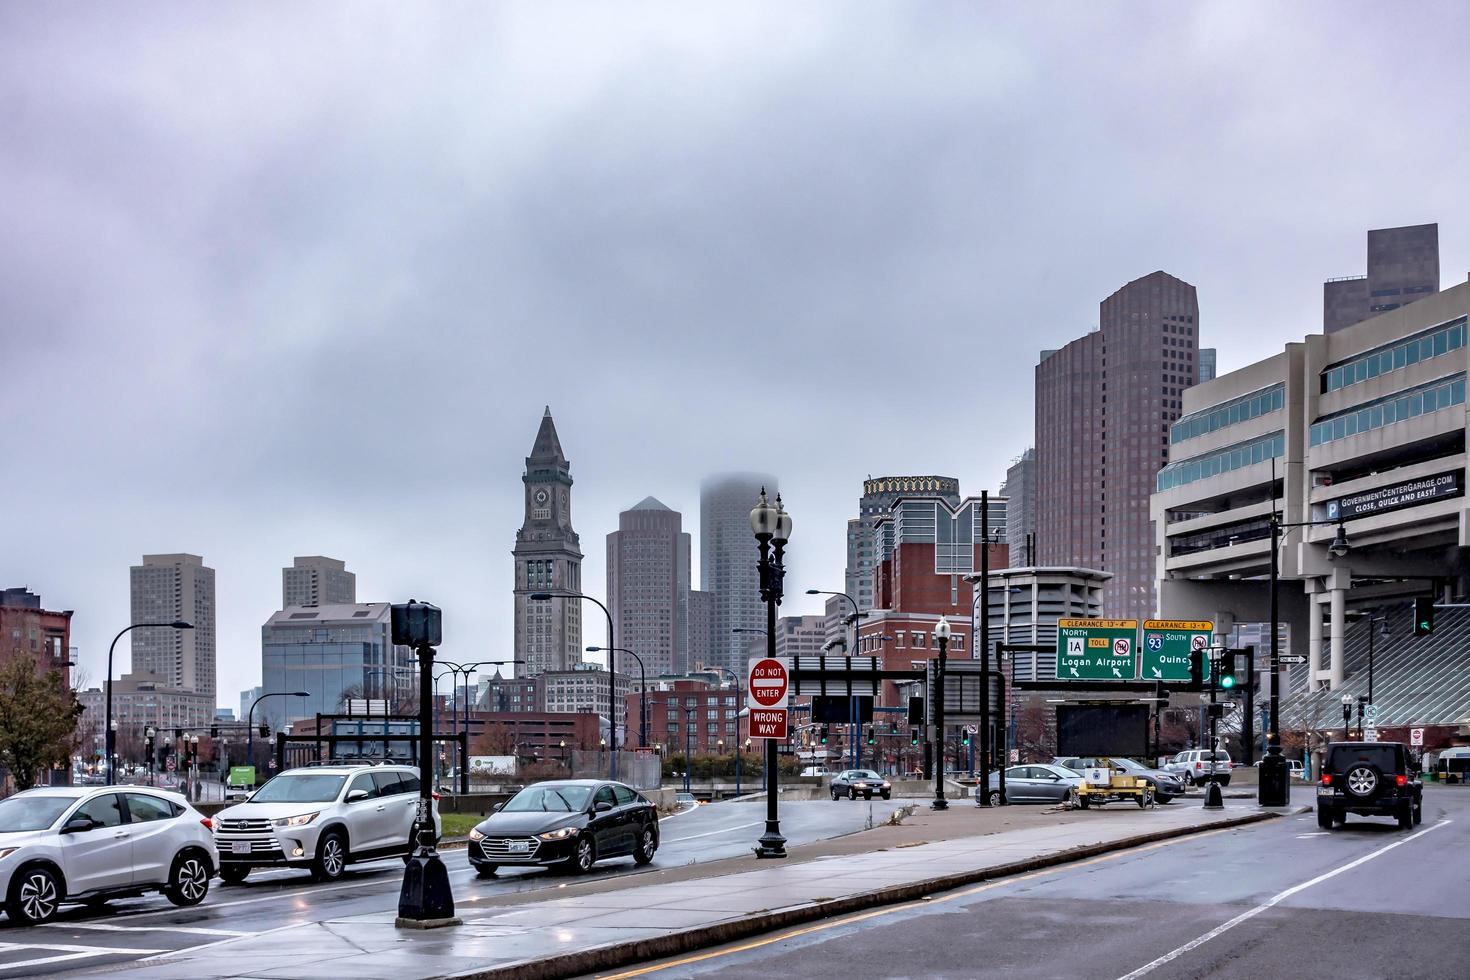 Boston, Massachusetts, 2021 - Street scenes on rainy day photo